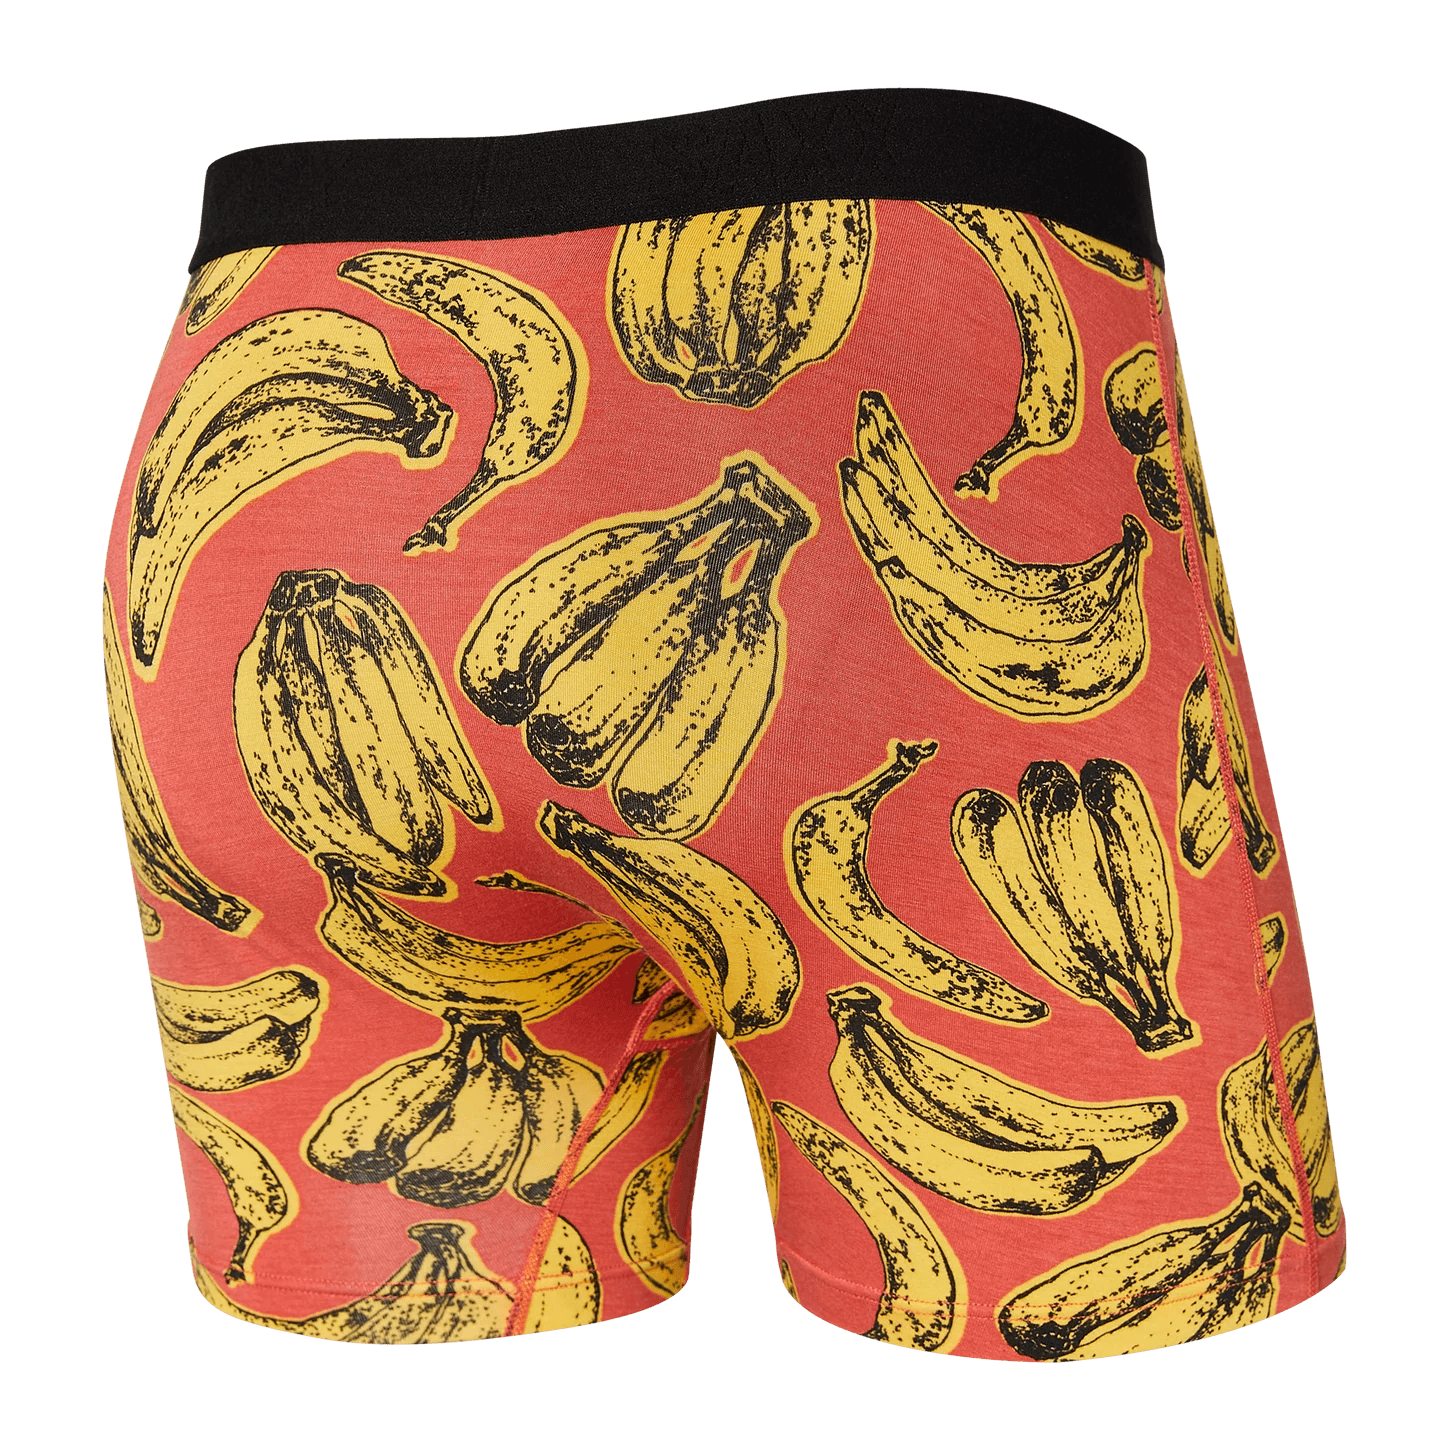 SAXX Ultra Boxer Brief Underwear Banana Bunch - Mystic Red Saxx 